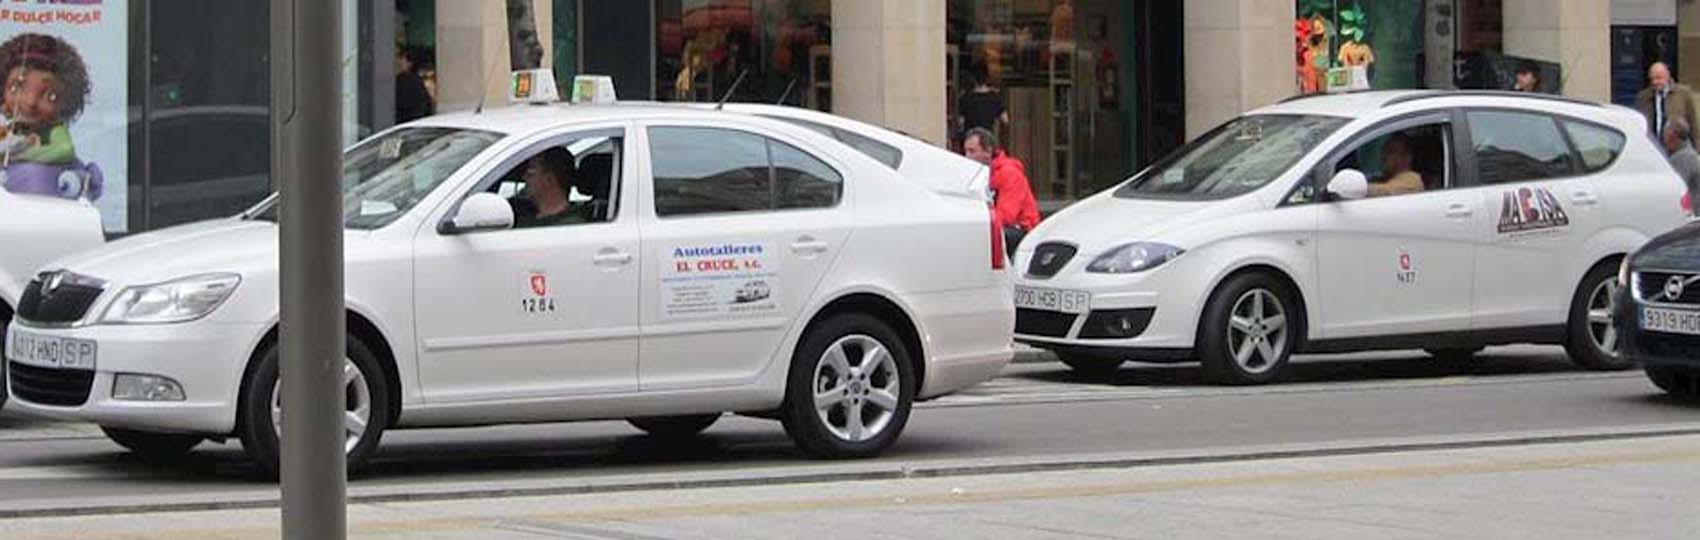 Noticias del sector del taxi y la movilidad en Zaragoza.  Mantente informado de todas las noticias del taxi de Zaragoza en el grupo de Facebook de Todo Taxi.